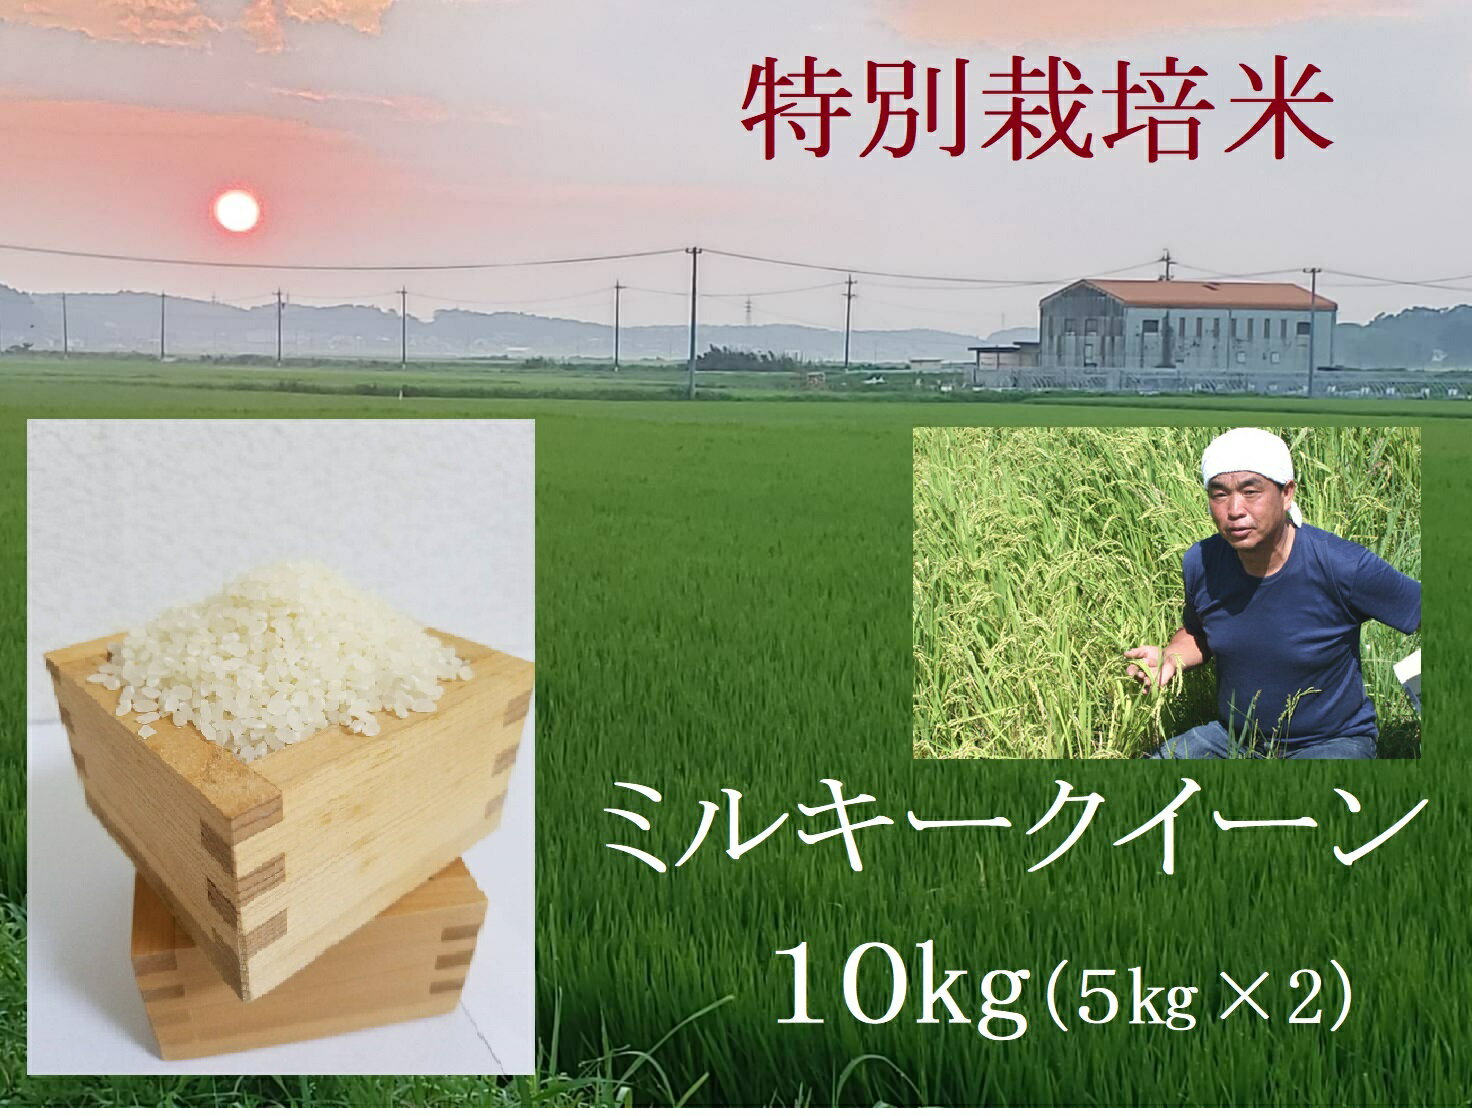 特別栽培米 新米 ミルキークイーン 10kg (11月 発送分)| 安心 精米 もちもちした食感 こだわりの農法 tc-0411